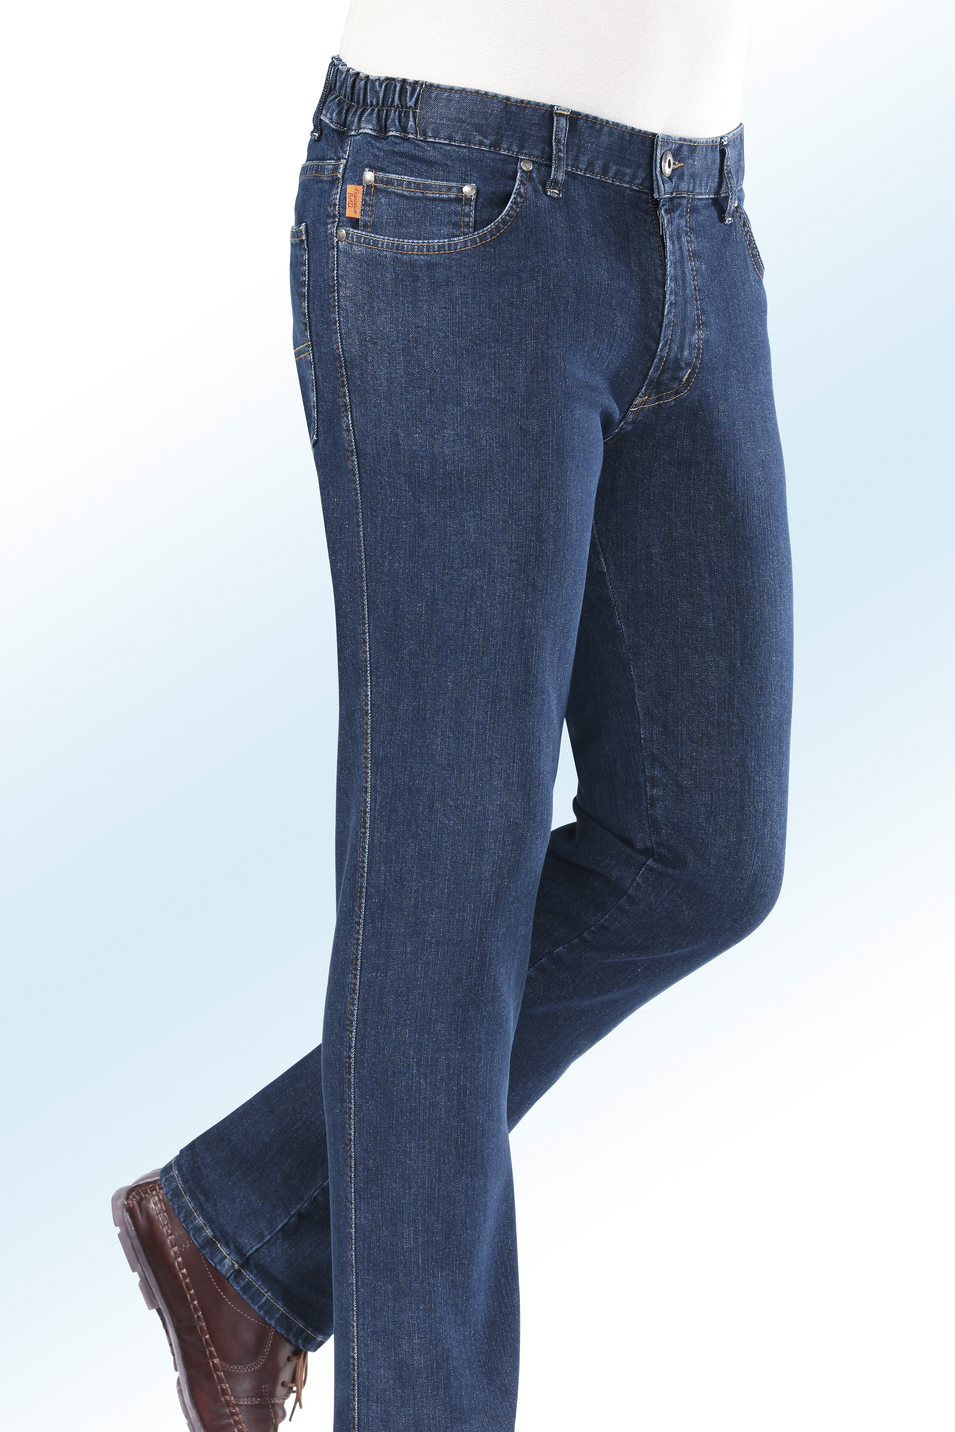 "Francesco Botti"-Jeans mit Dehnbundeinsätzen in 3 Farben, Jeansblau, Größe 30 von FRANCESCO BOTTI